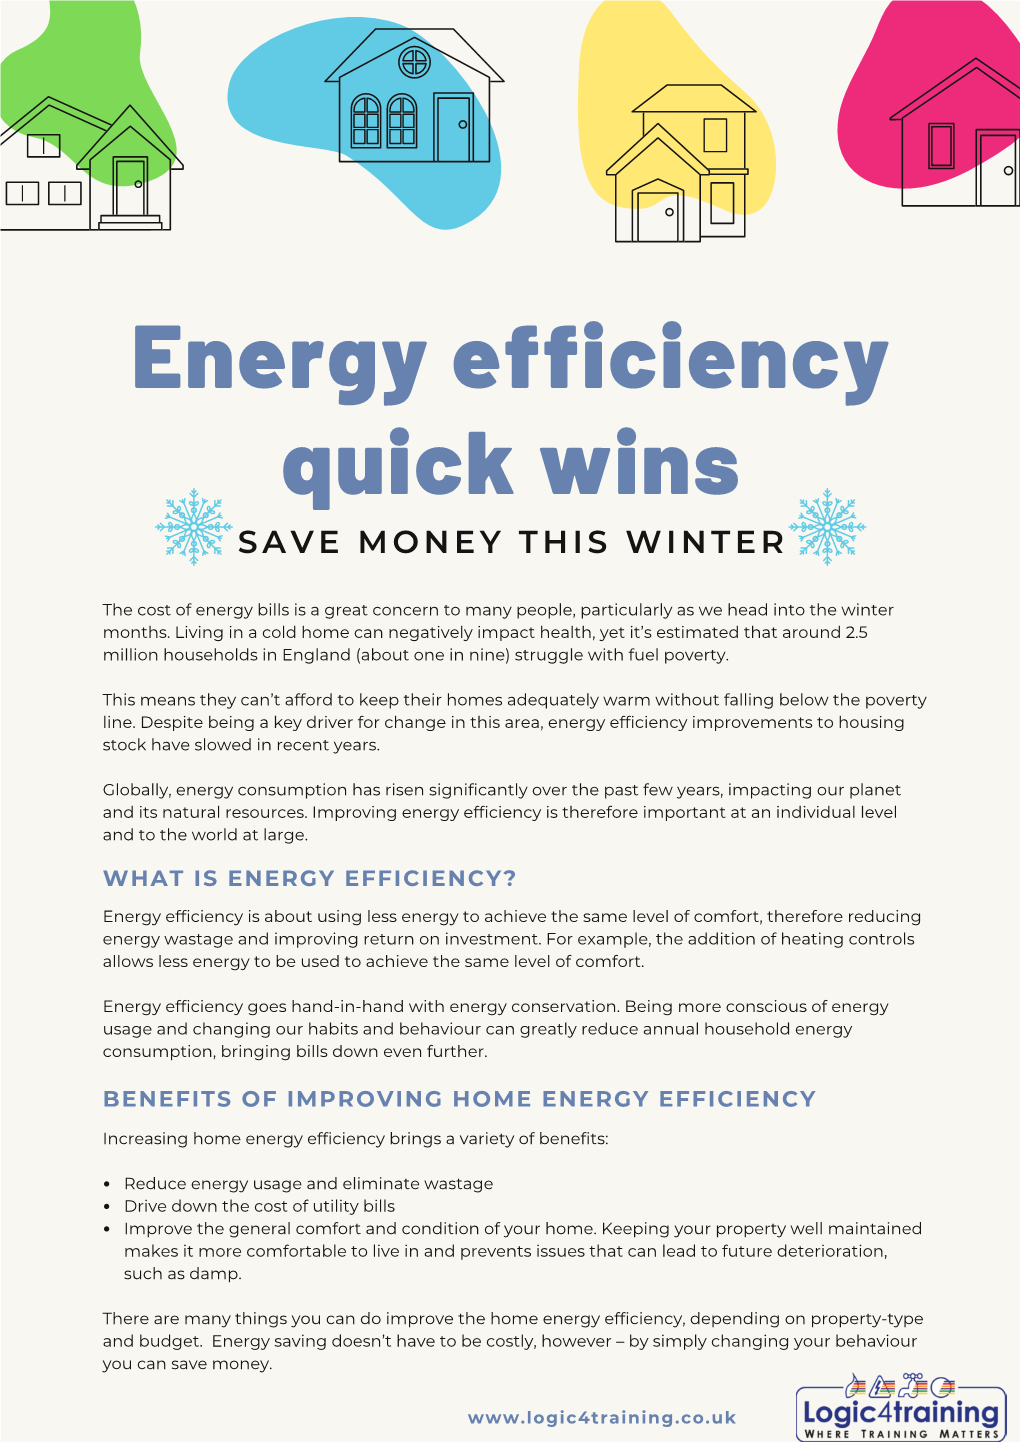 Energy Efficiency Guide